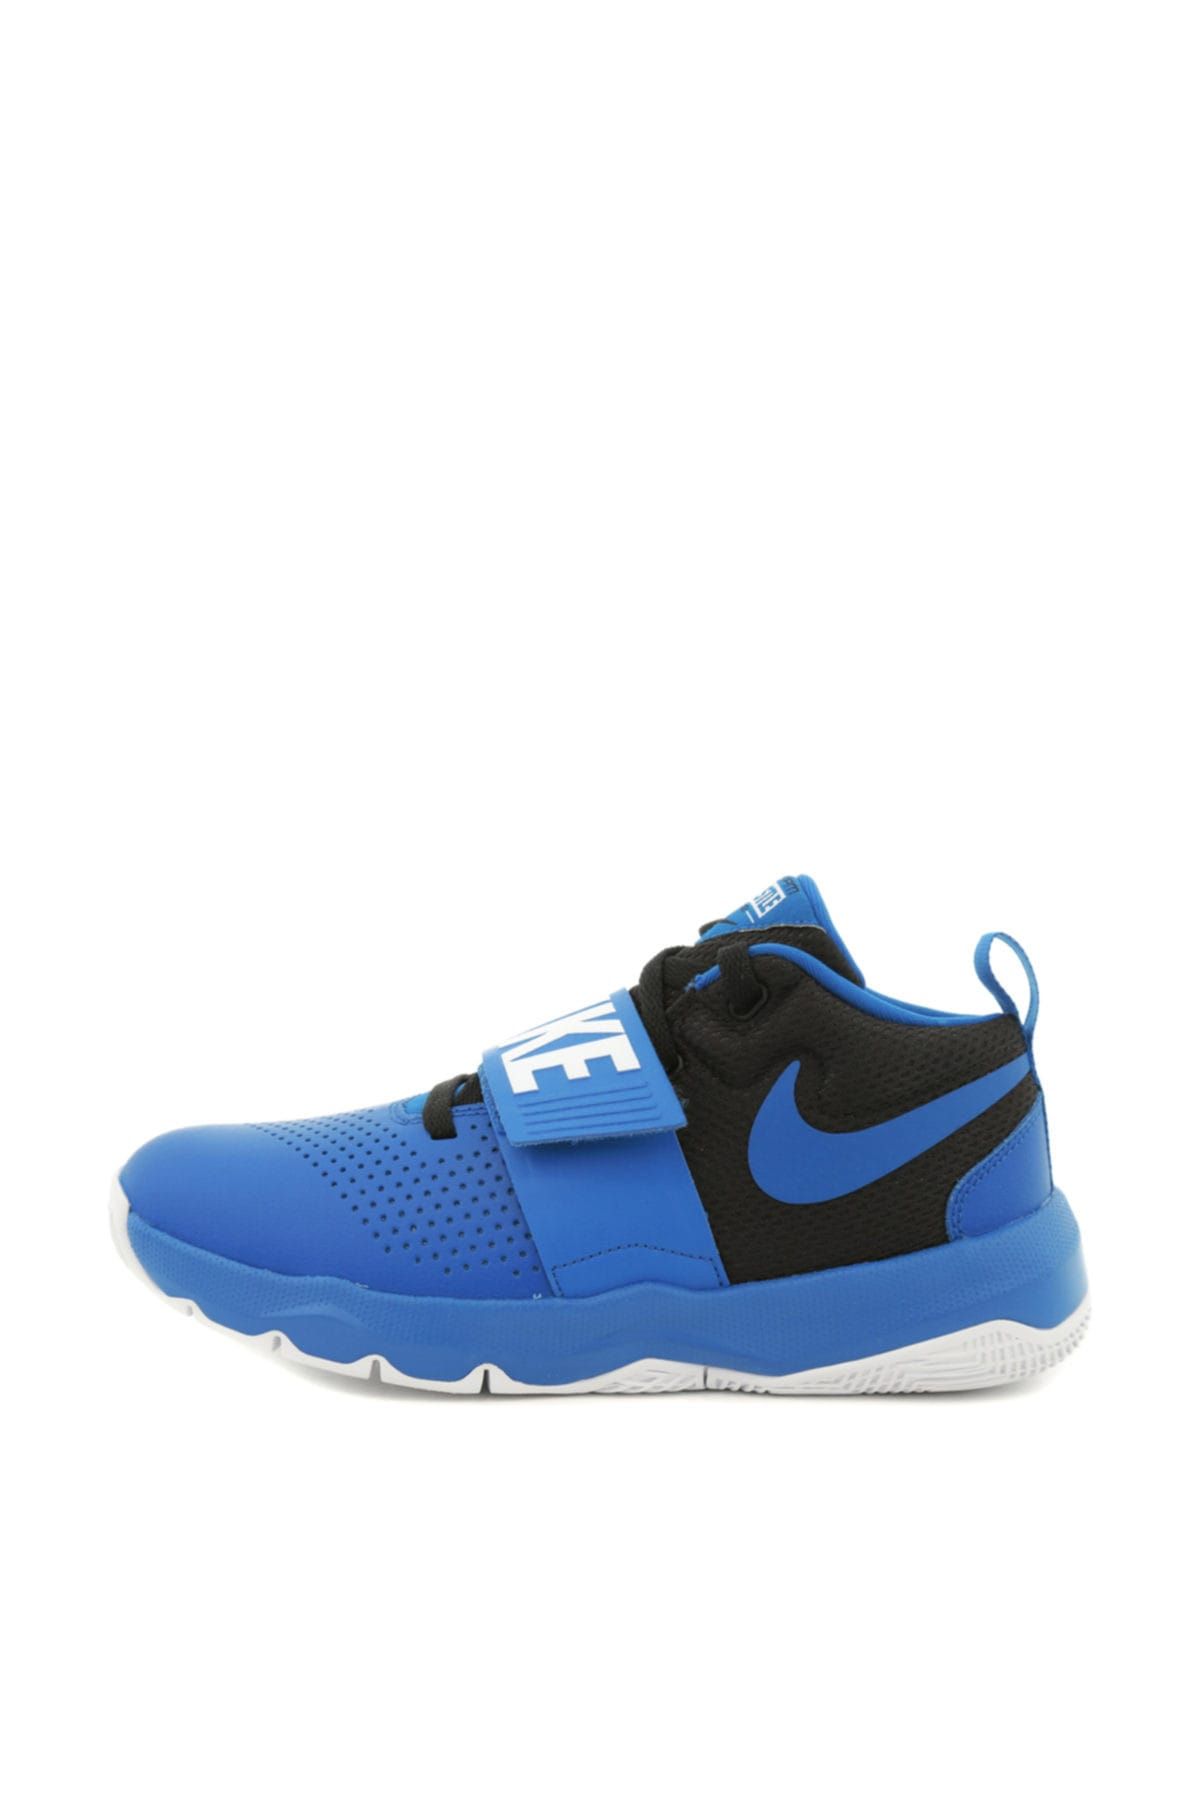 Nike Team Hustle D 8 (Gs) Basketbol Ayakkabısı Mavi